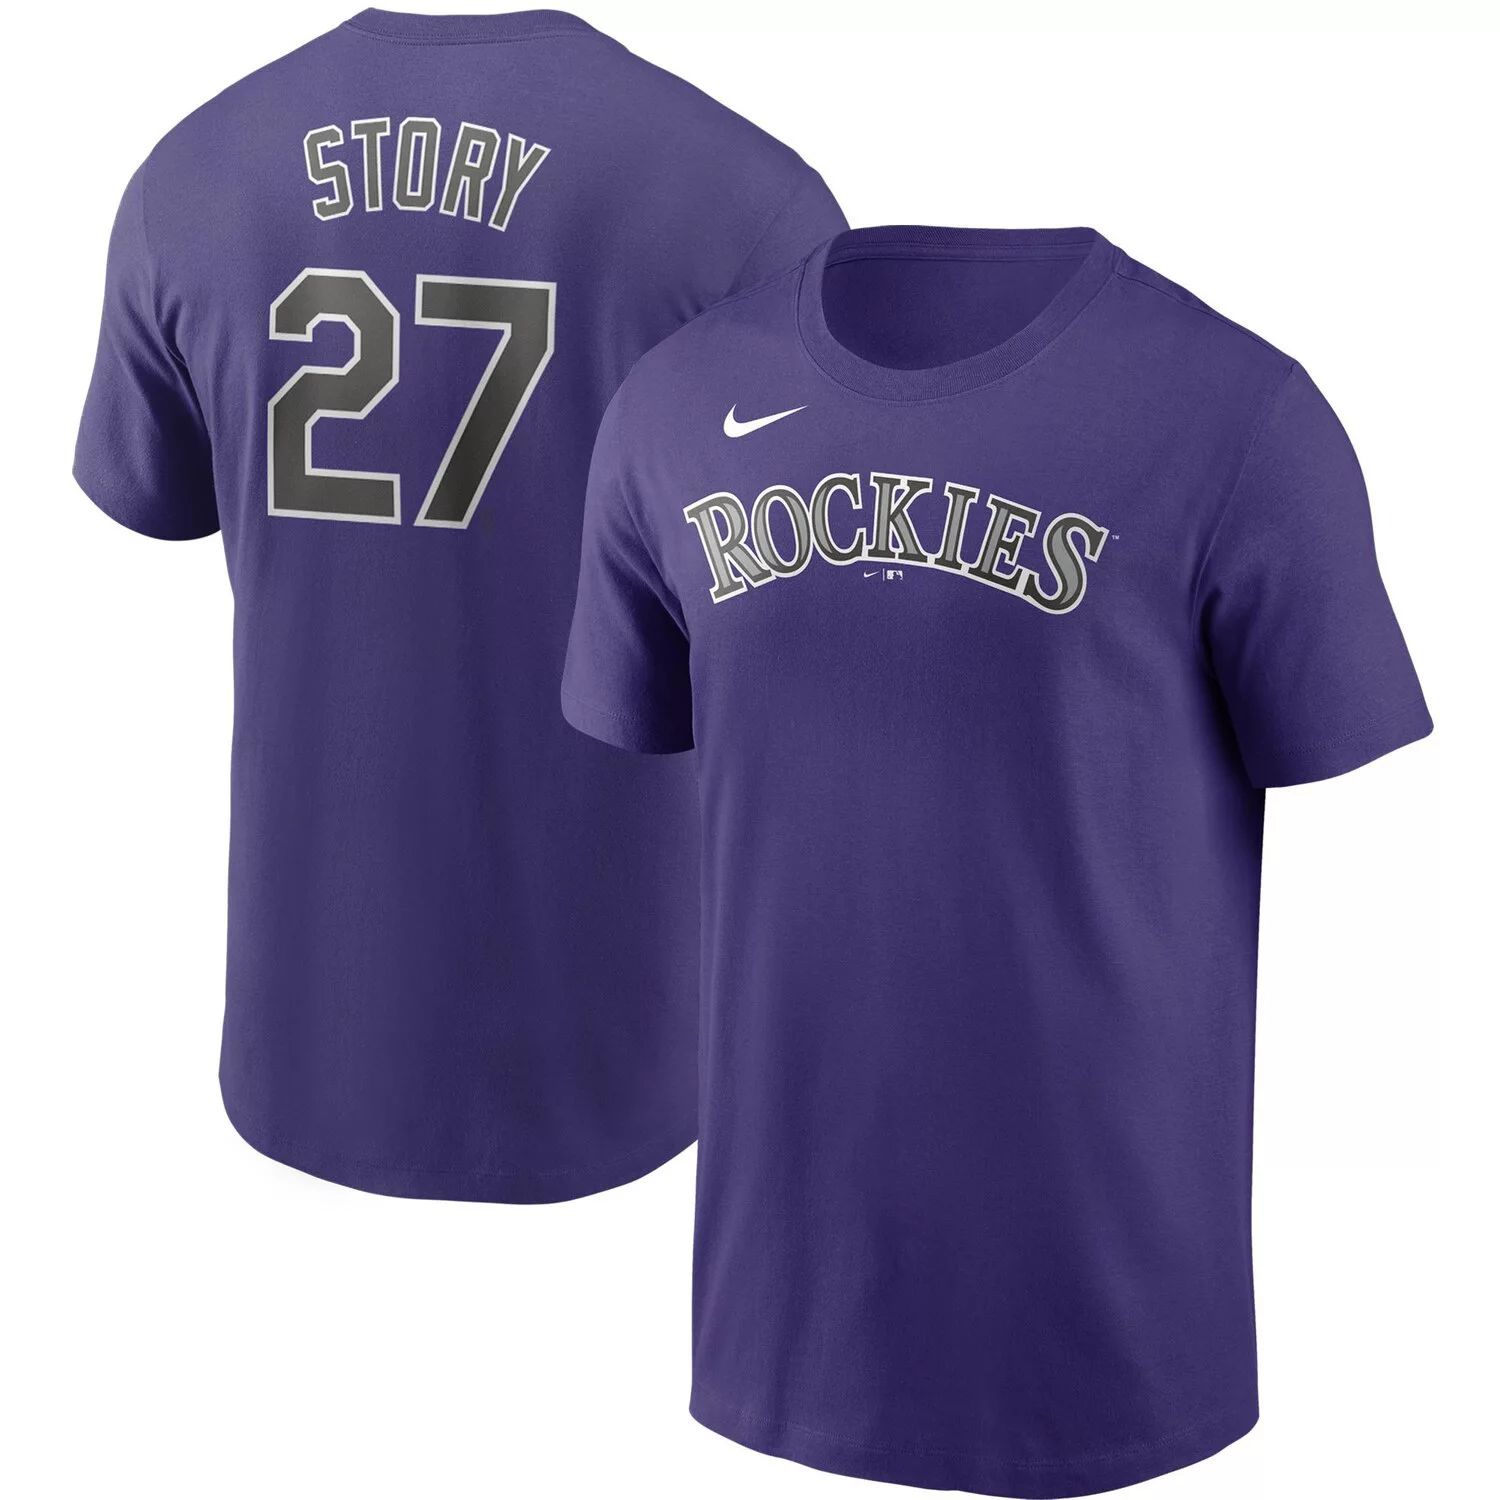 Мужская футболка Nike Trevor Story Purple Colorado Rockies с именем и номером команды мужская футболка kris bryant purple colorado rockies с именем и номером игрока nike фиолетовый